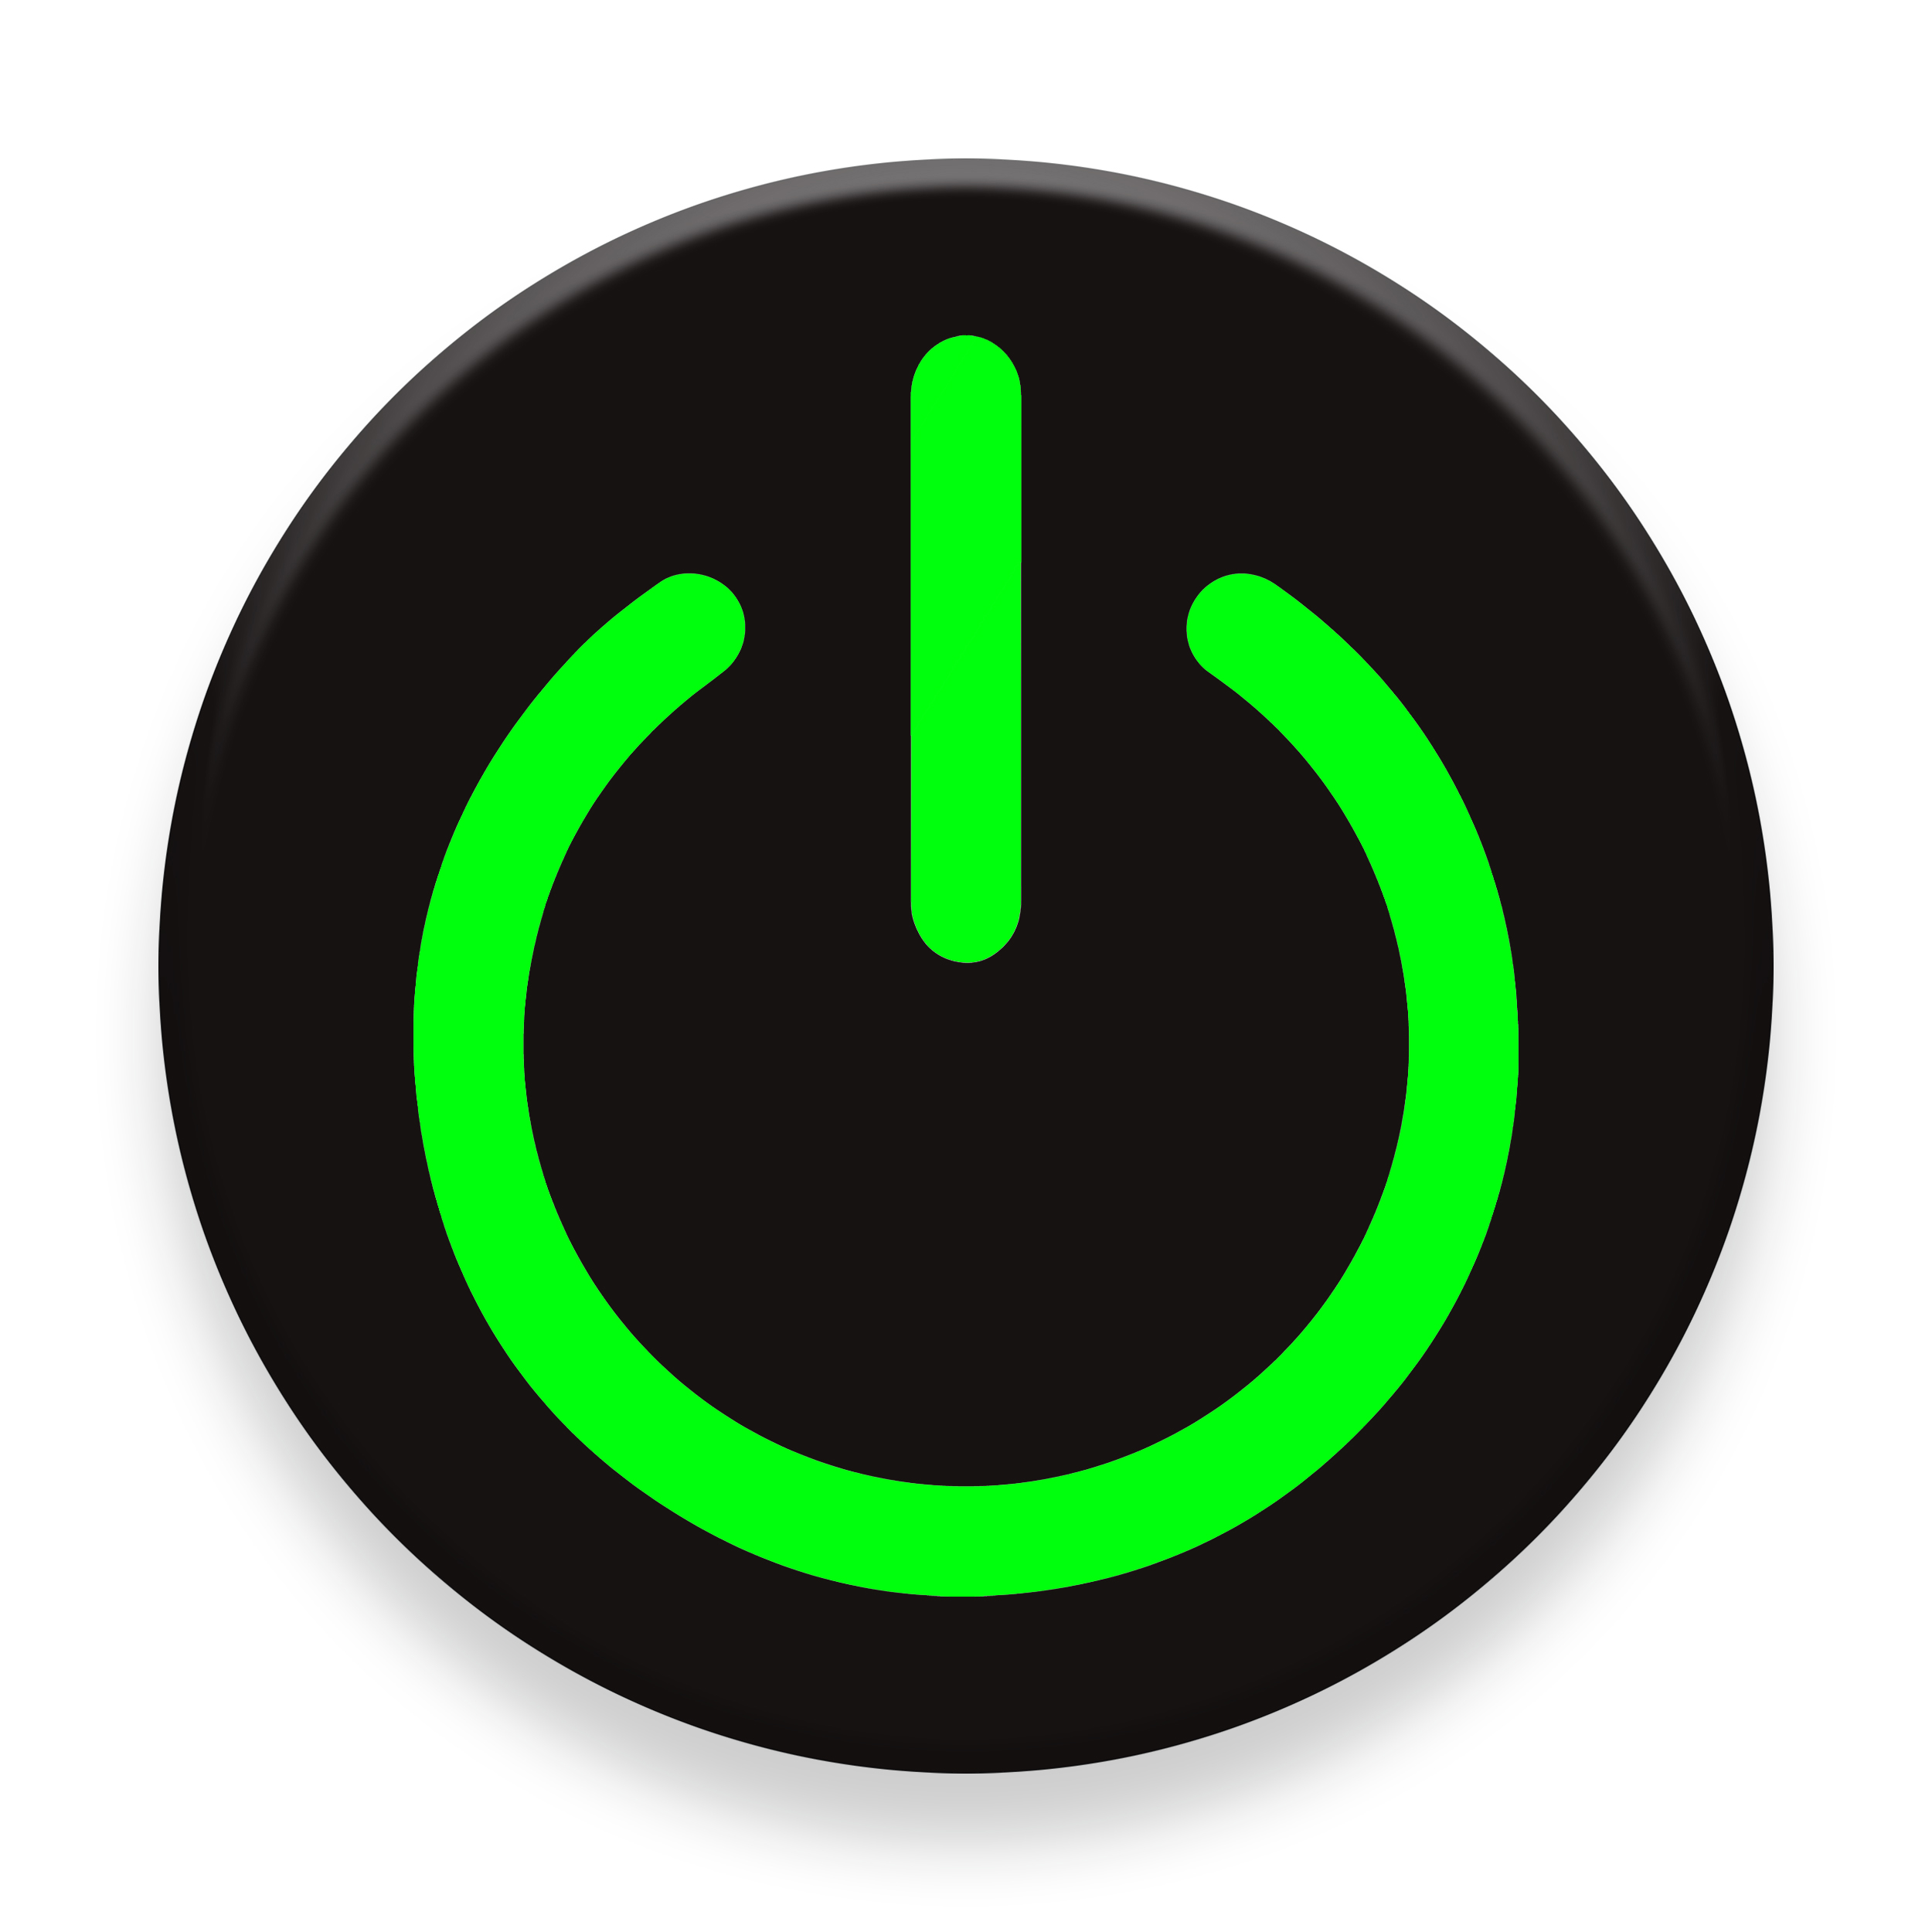  برچسب موبایل مای سیحان مدل Power icon مناسب برای پایه نگهدارنده مغناطیسی 